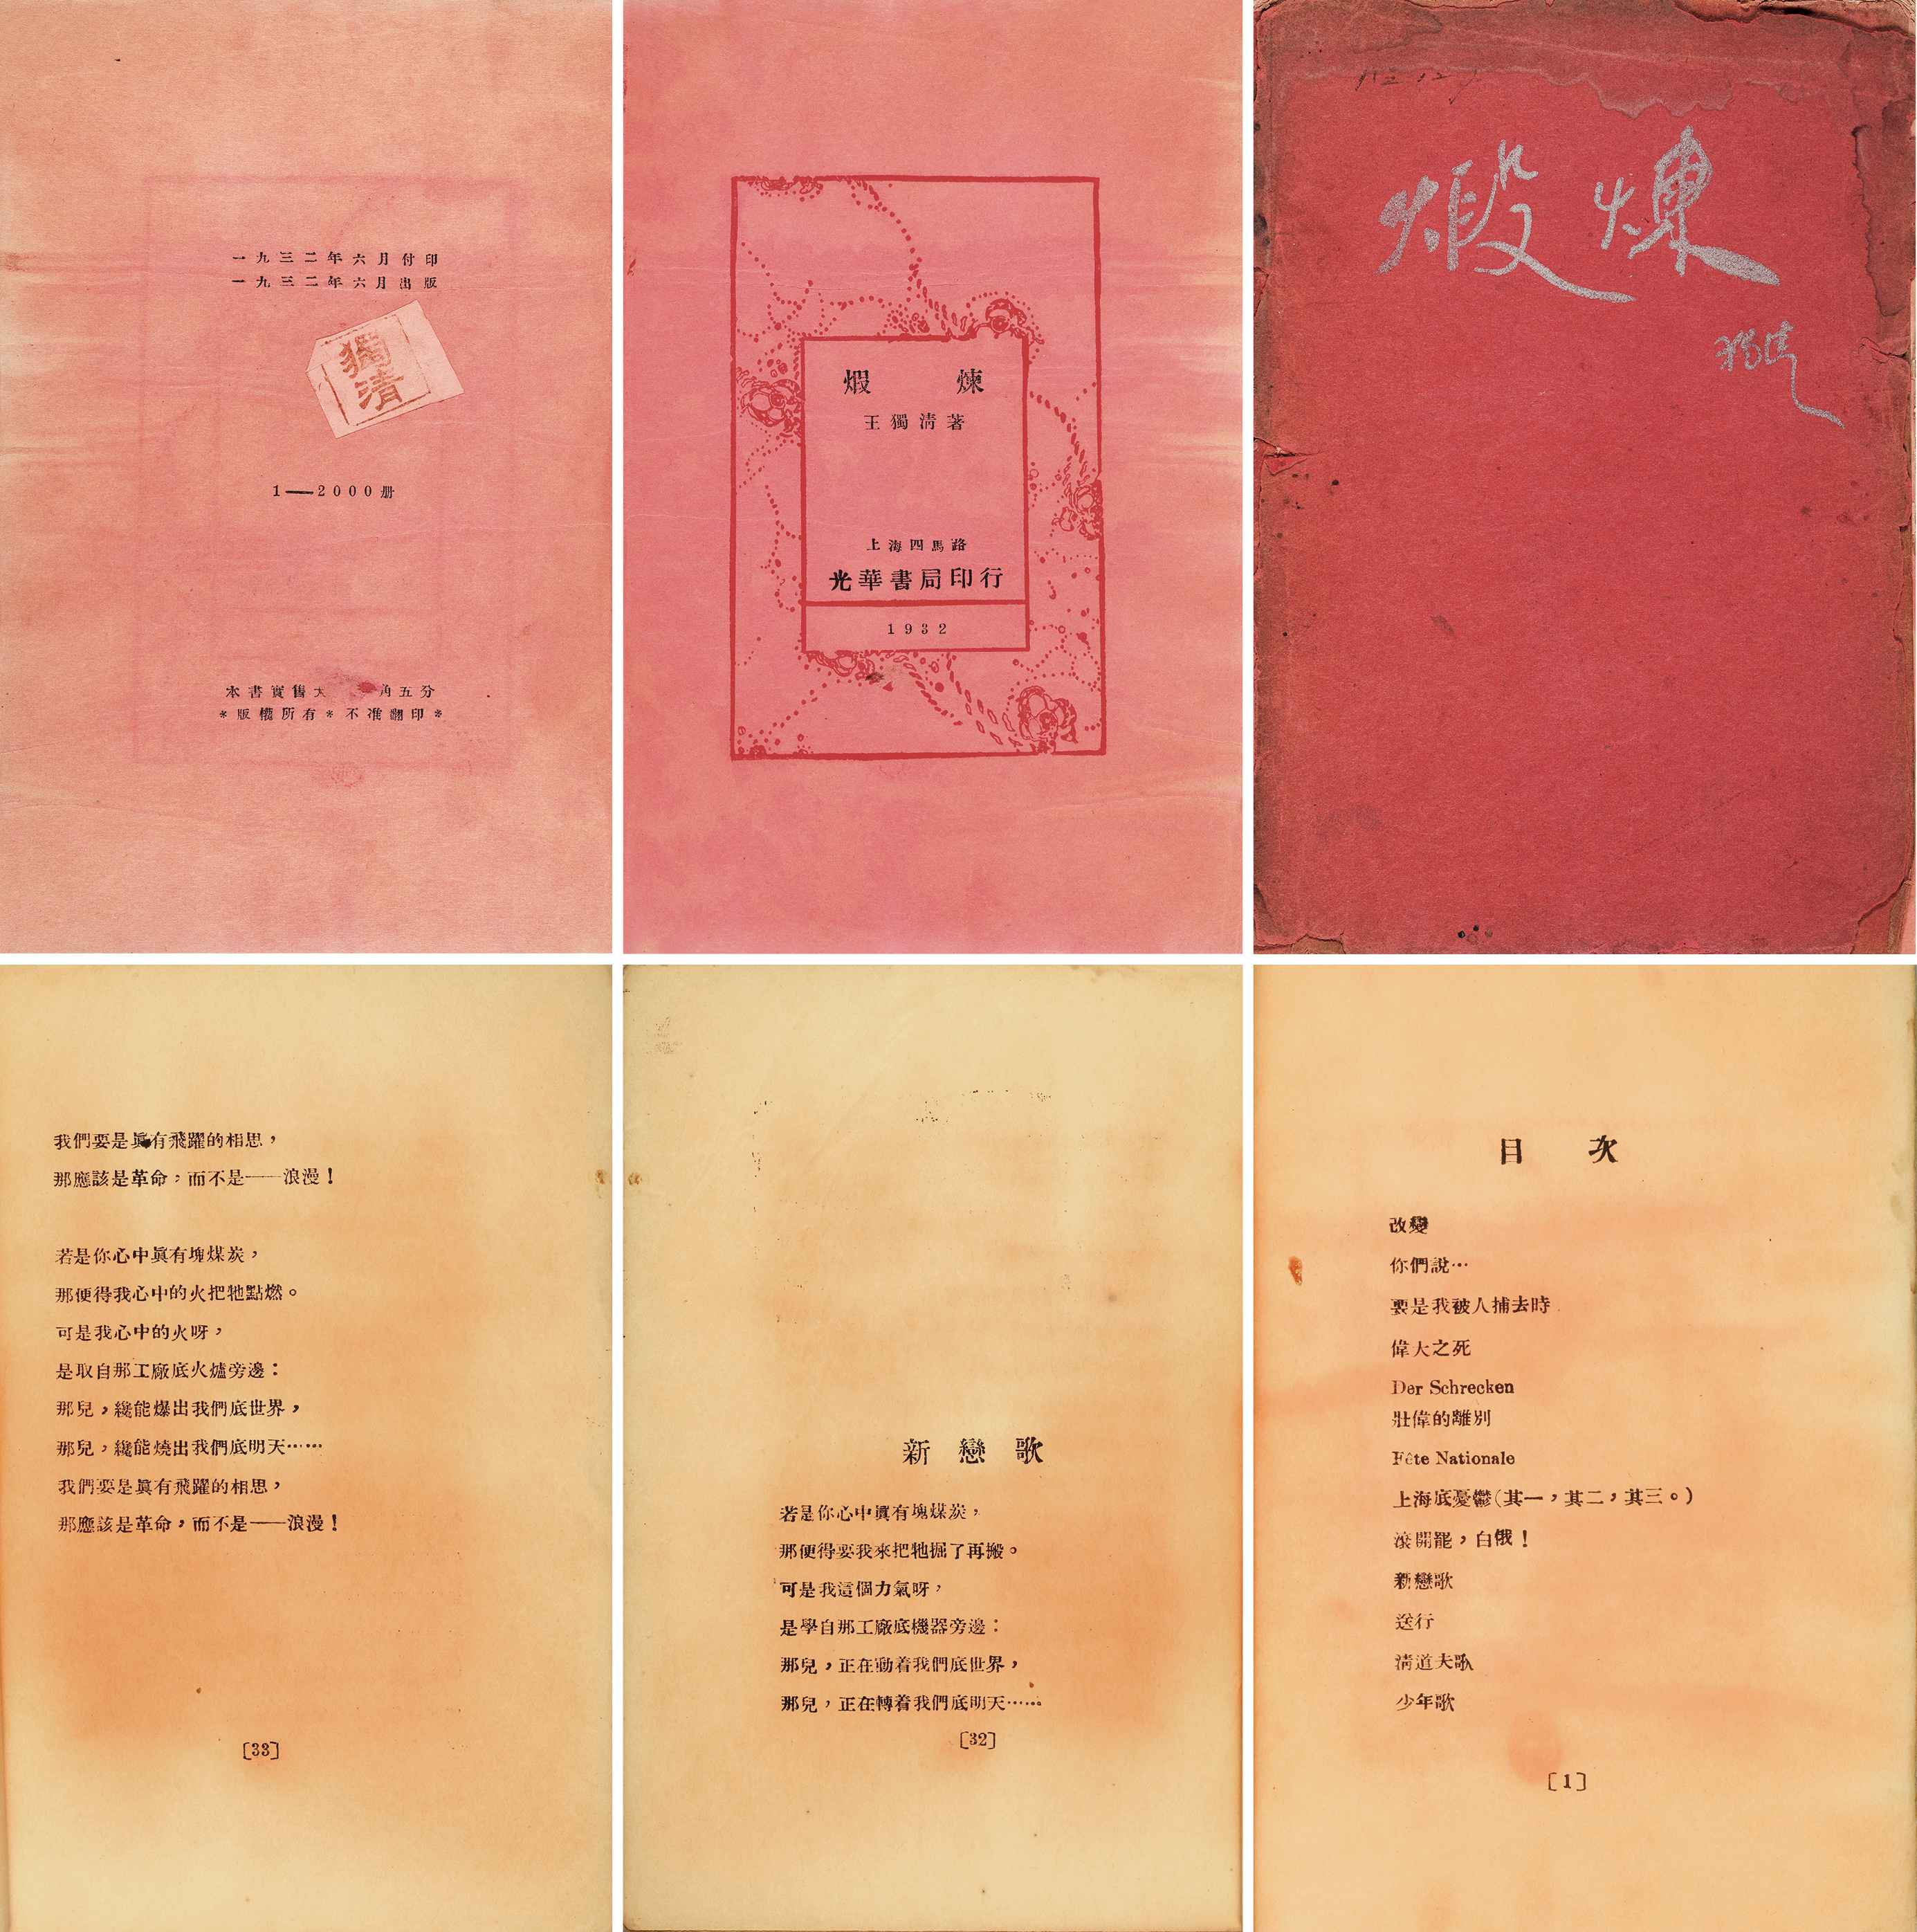 锻炼 民国二十一年（1932）上海光华书局出版